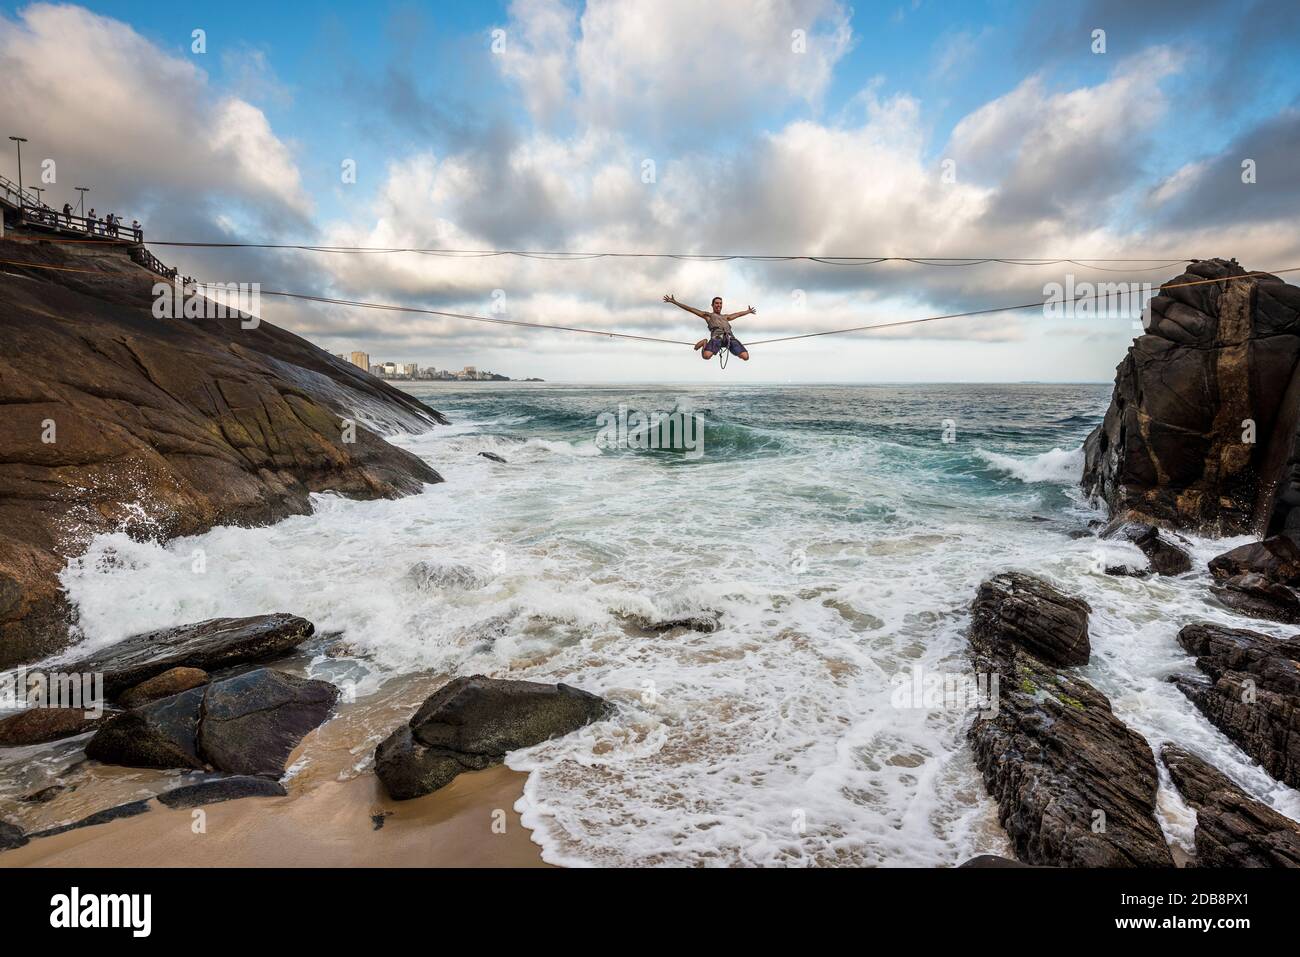 Man slacklining on seashore, Leblon Beach, Rio de Janeiro, Brazil Stock Photo